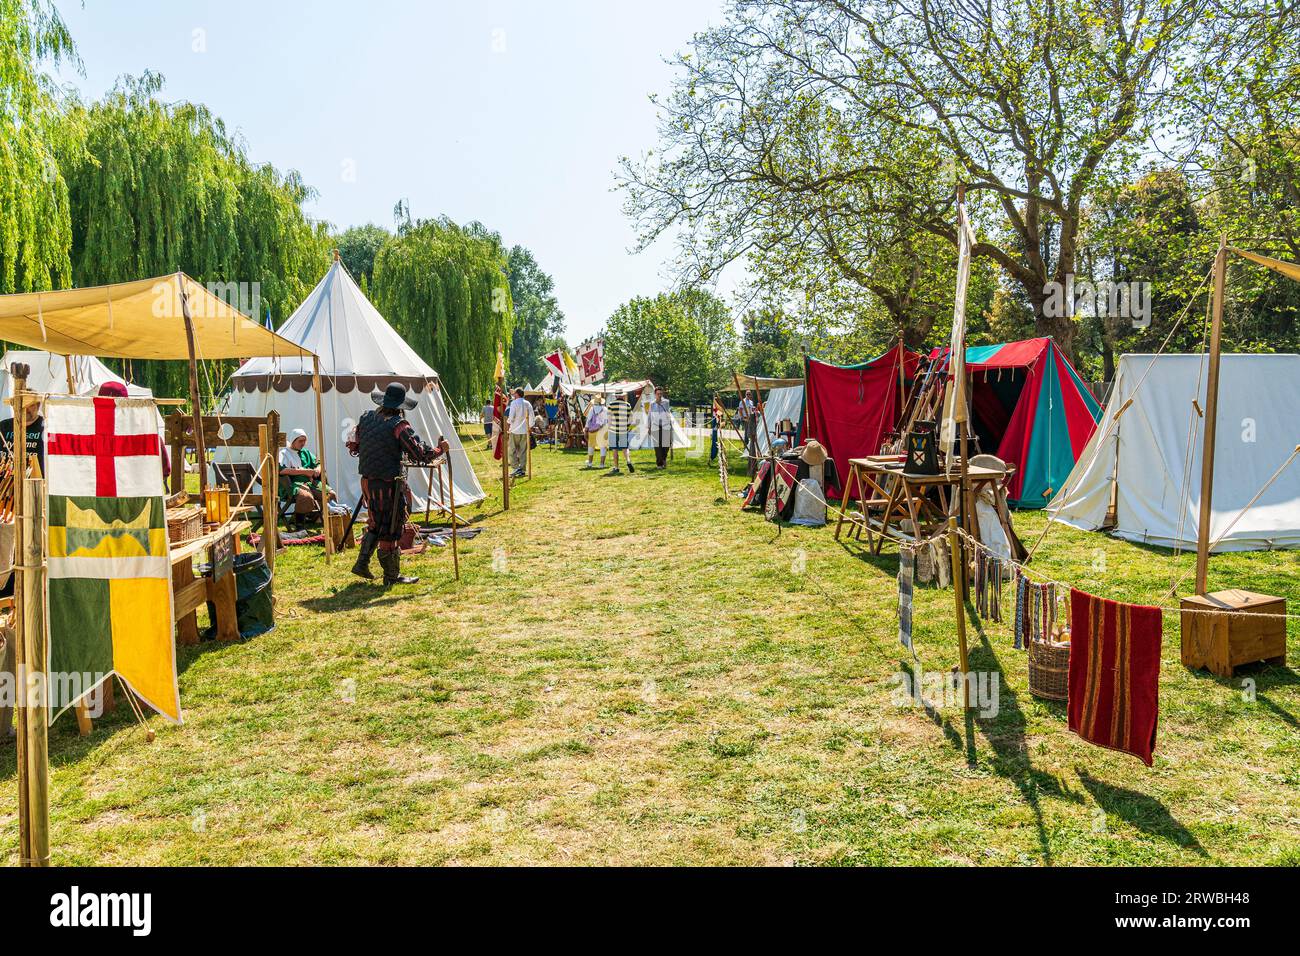 Mittelalterliches Lager für lebendige Geschichte auf dem Grünen in der alten Stadt Kent in Sandwich. Verschiedene Arten von Zelten, die mit Kunsthandwerk und Handel eingerichtet wurden. Stockfoto